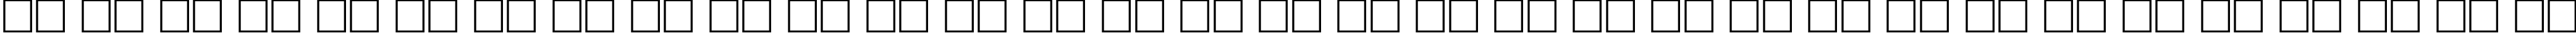 Пример написания русского алфавита шрифтом Fleetwood Regular